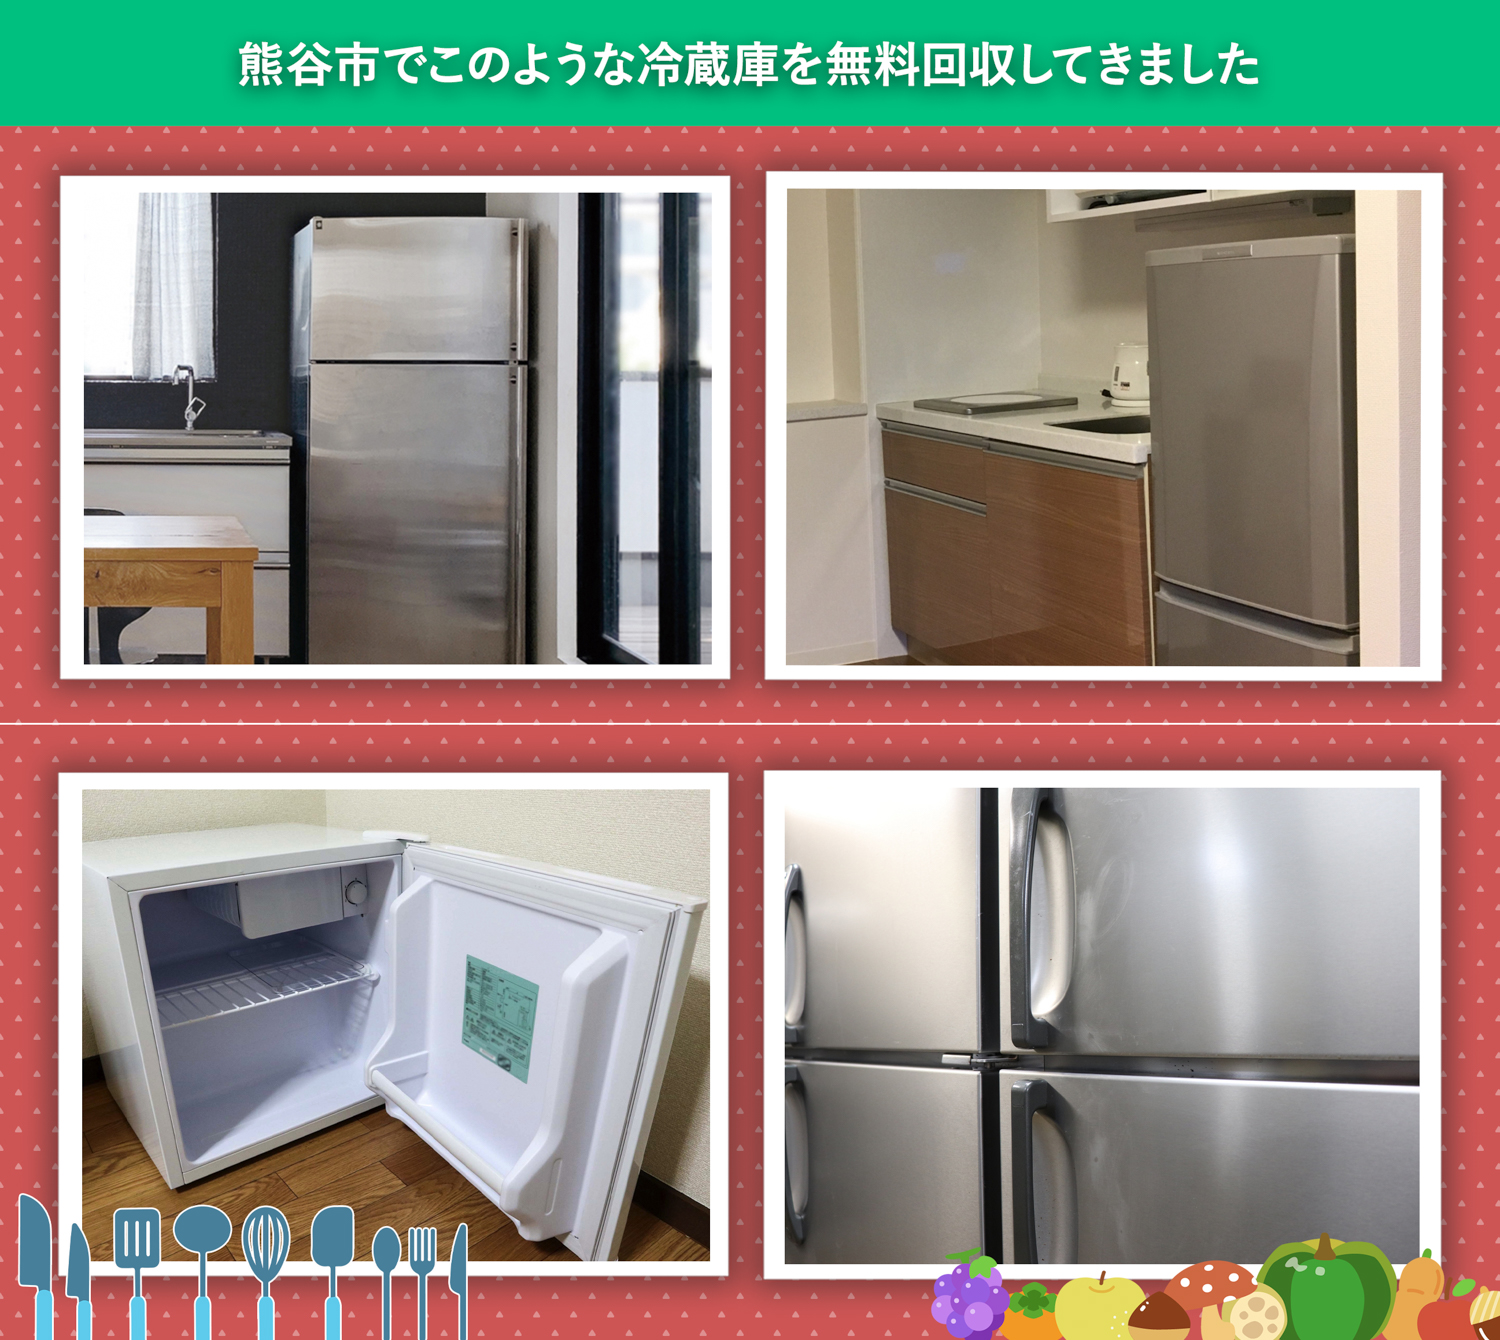 熊谷市でこのような冷蔵庫を無料回収してきました。